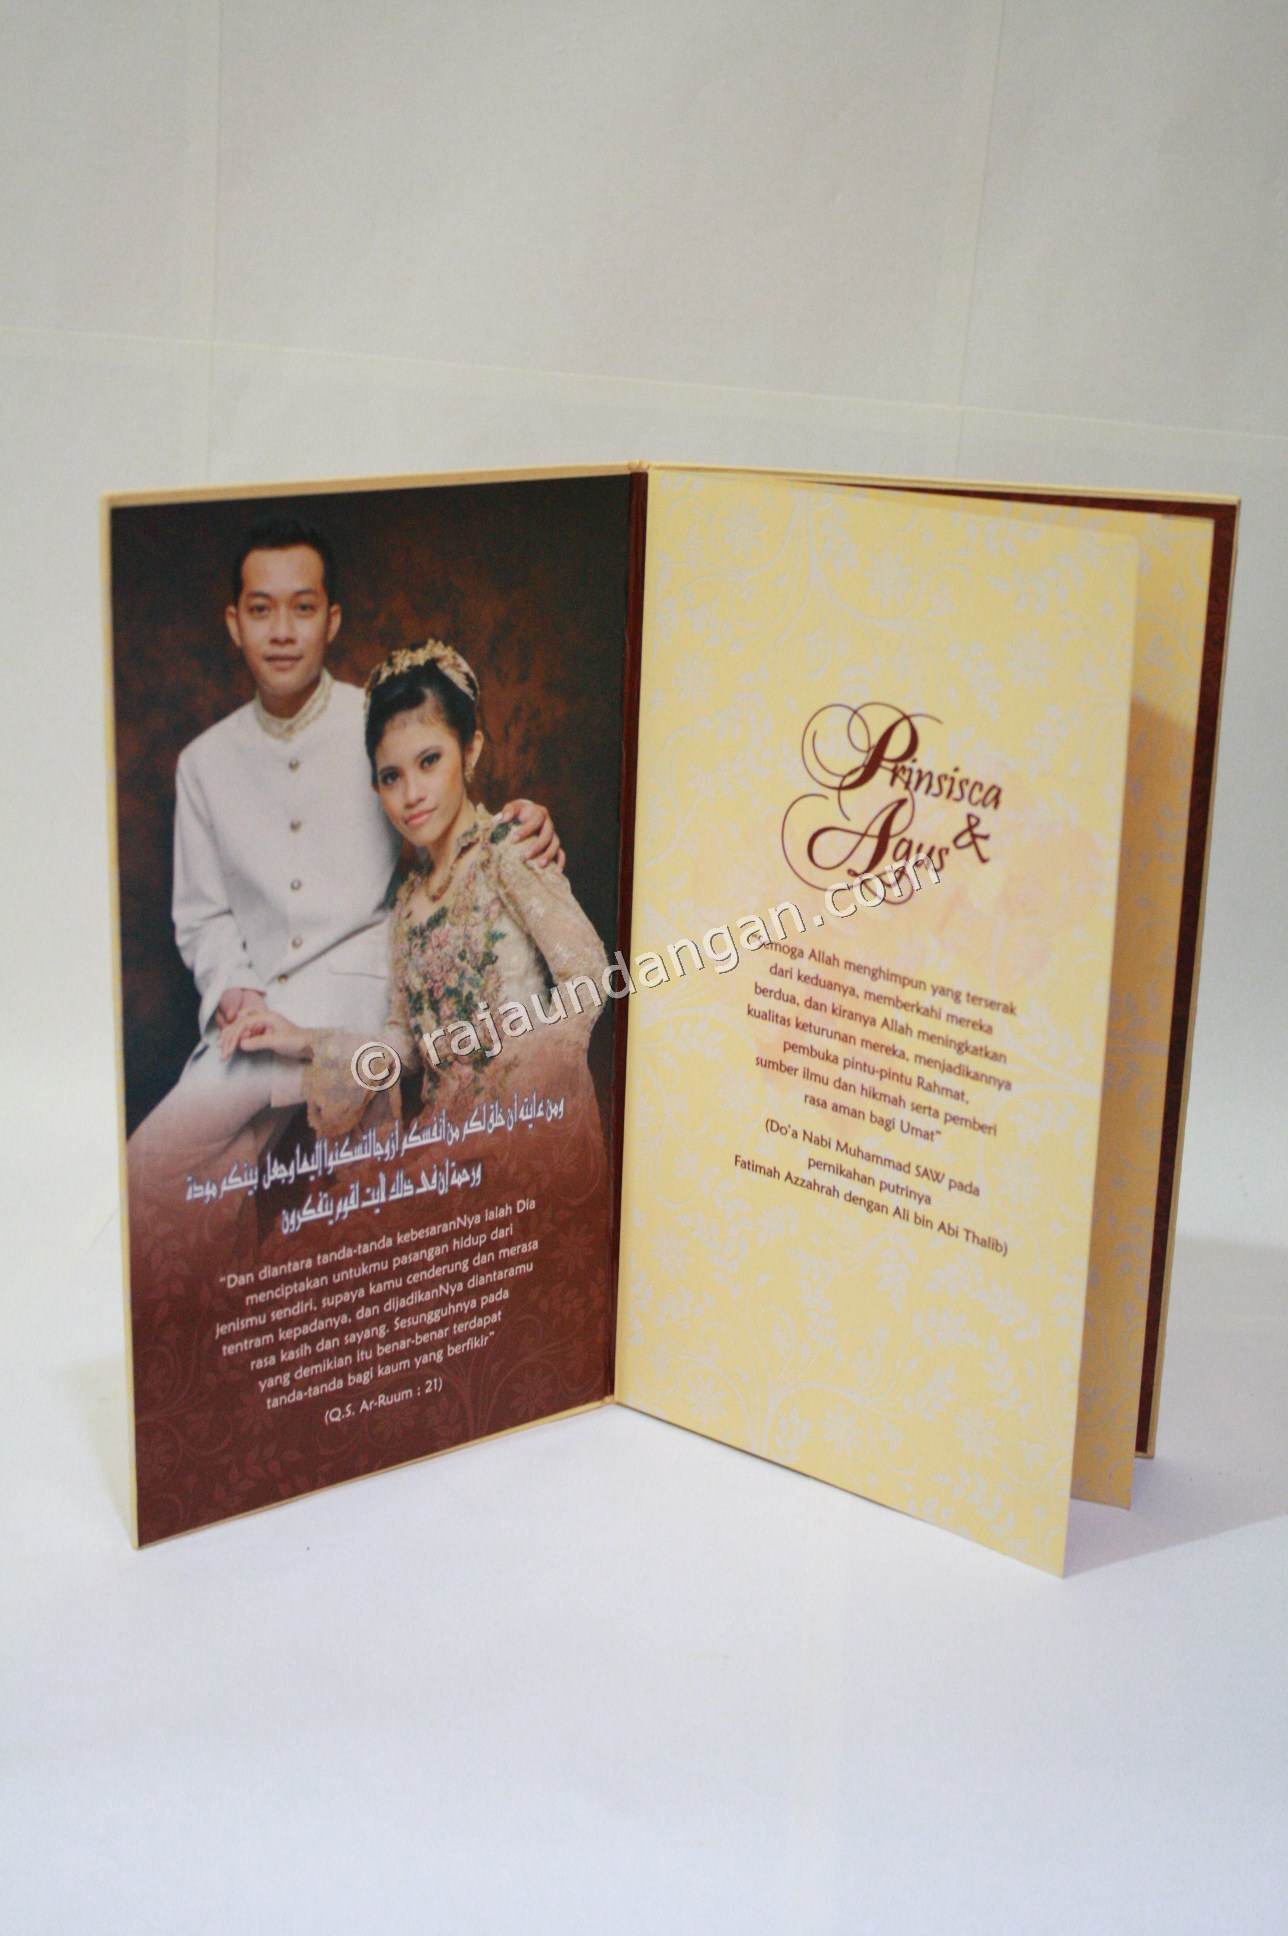 Contoh Kartu Undangan Pernikahan Hardcover Prinsisca dan Agus 4 - Membuat Wedding Invitations Online di Balaskumprik